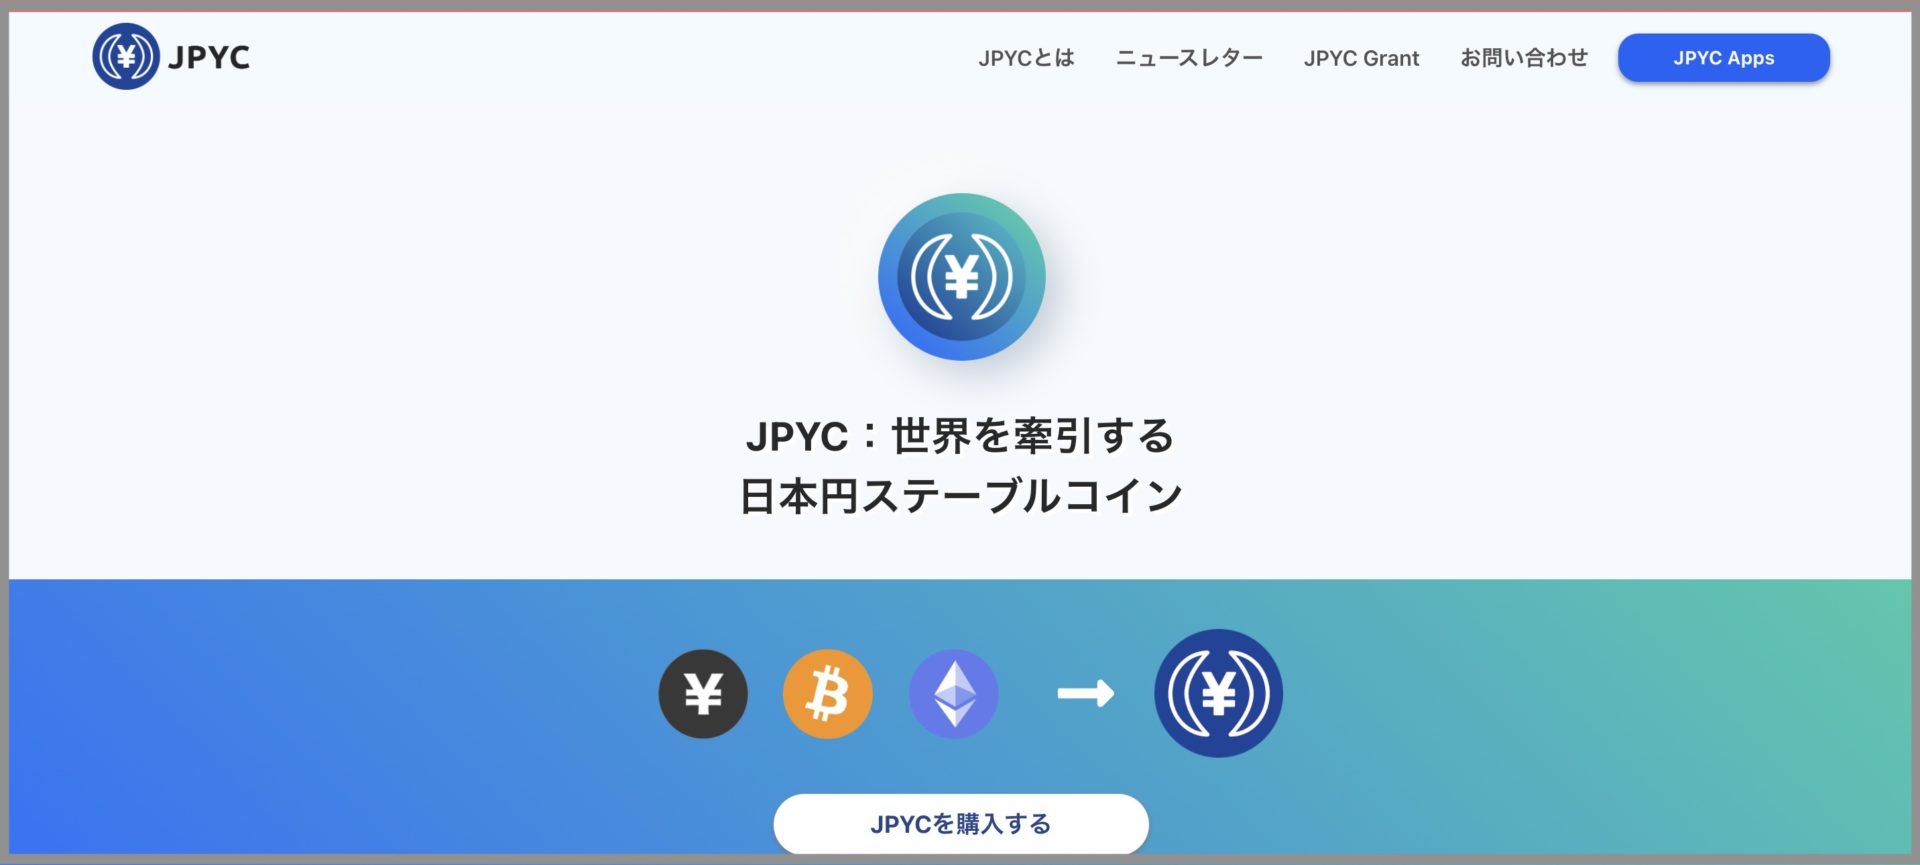 JPYCの購入手順